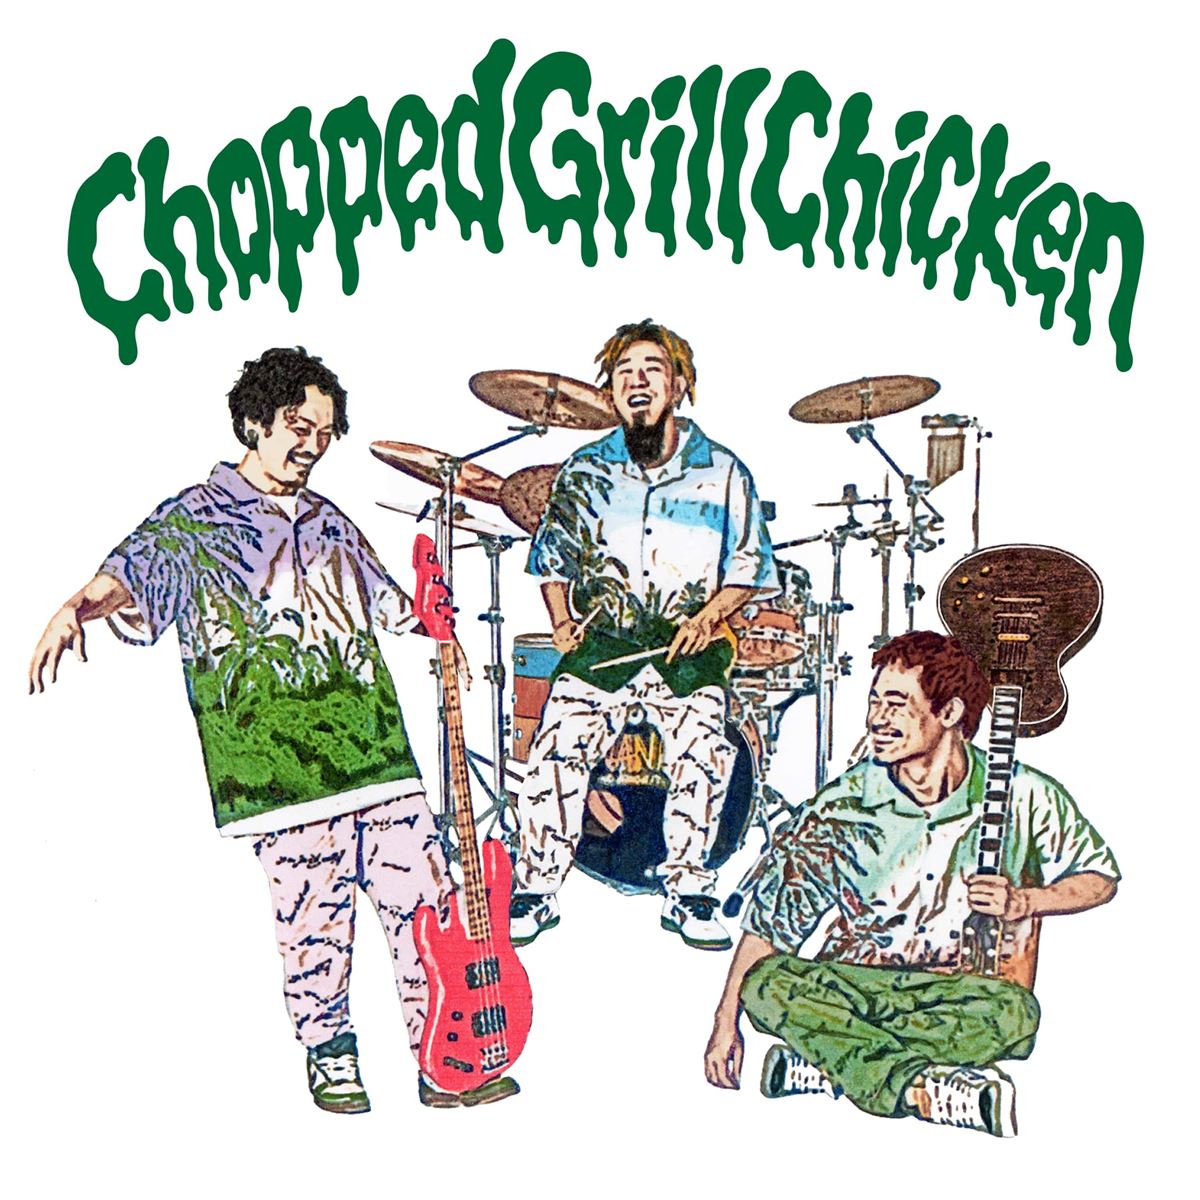 WANIMA 7thシングル『Chopped Grill Chicken』ジャケット